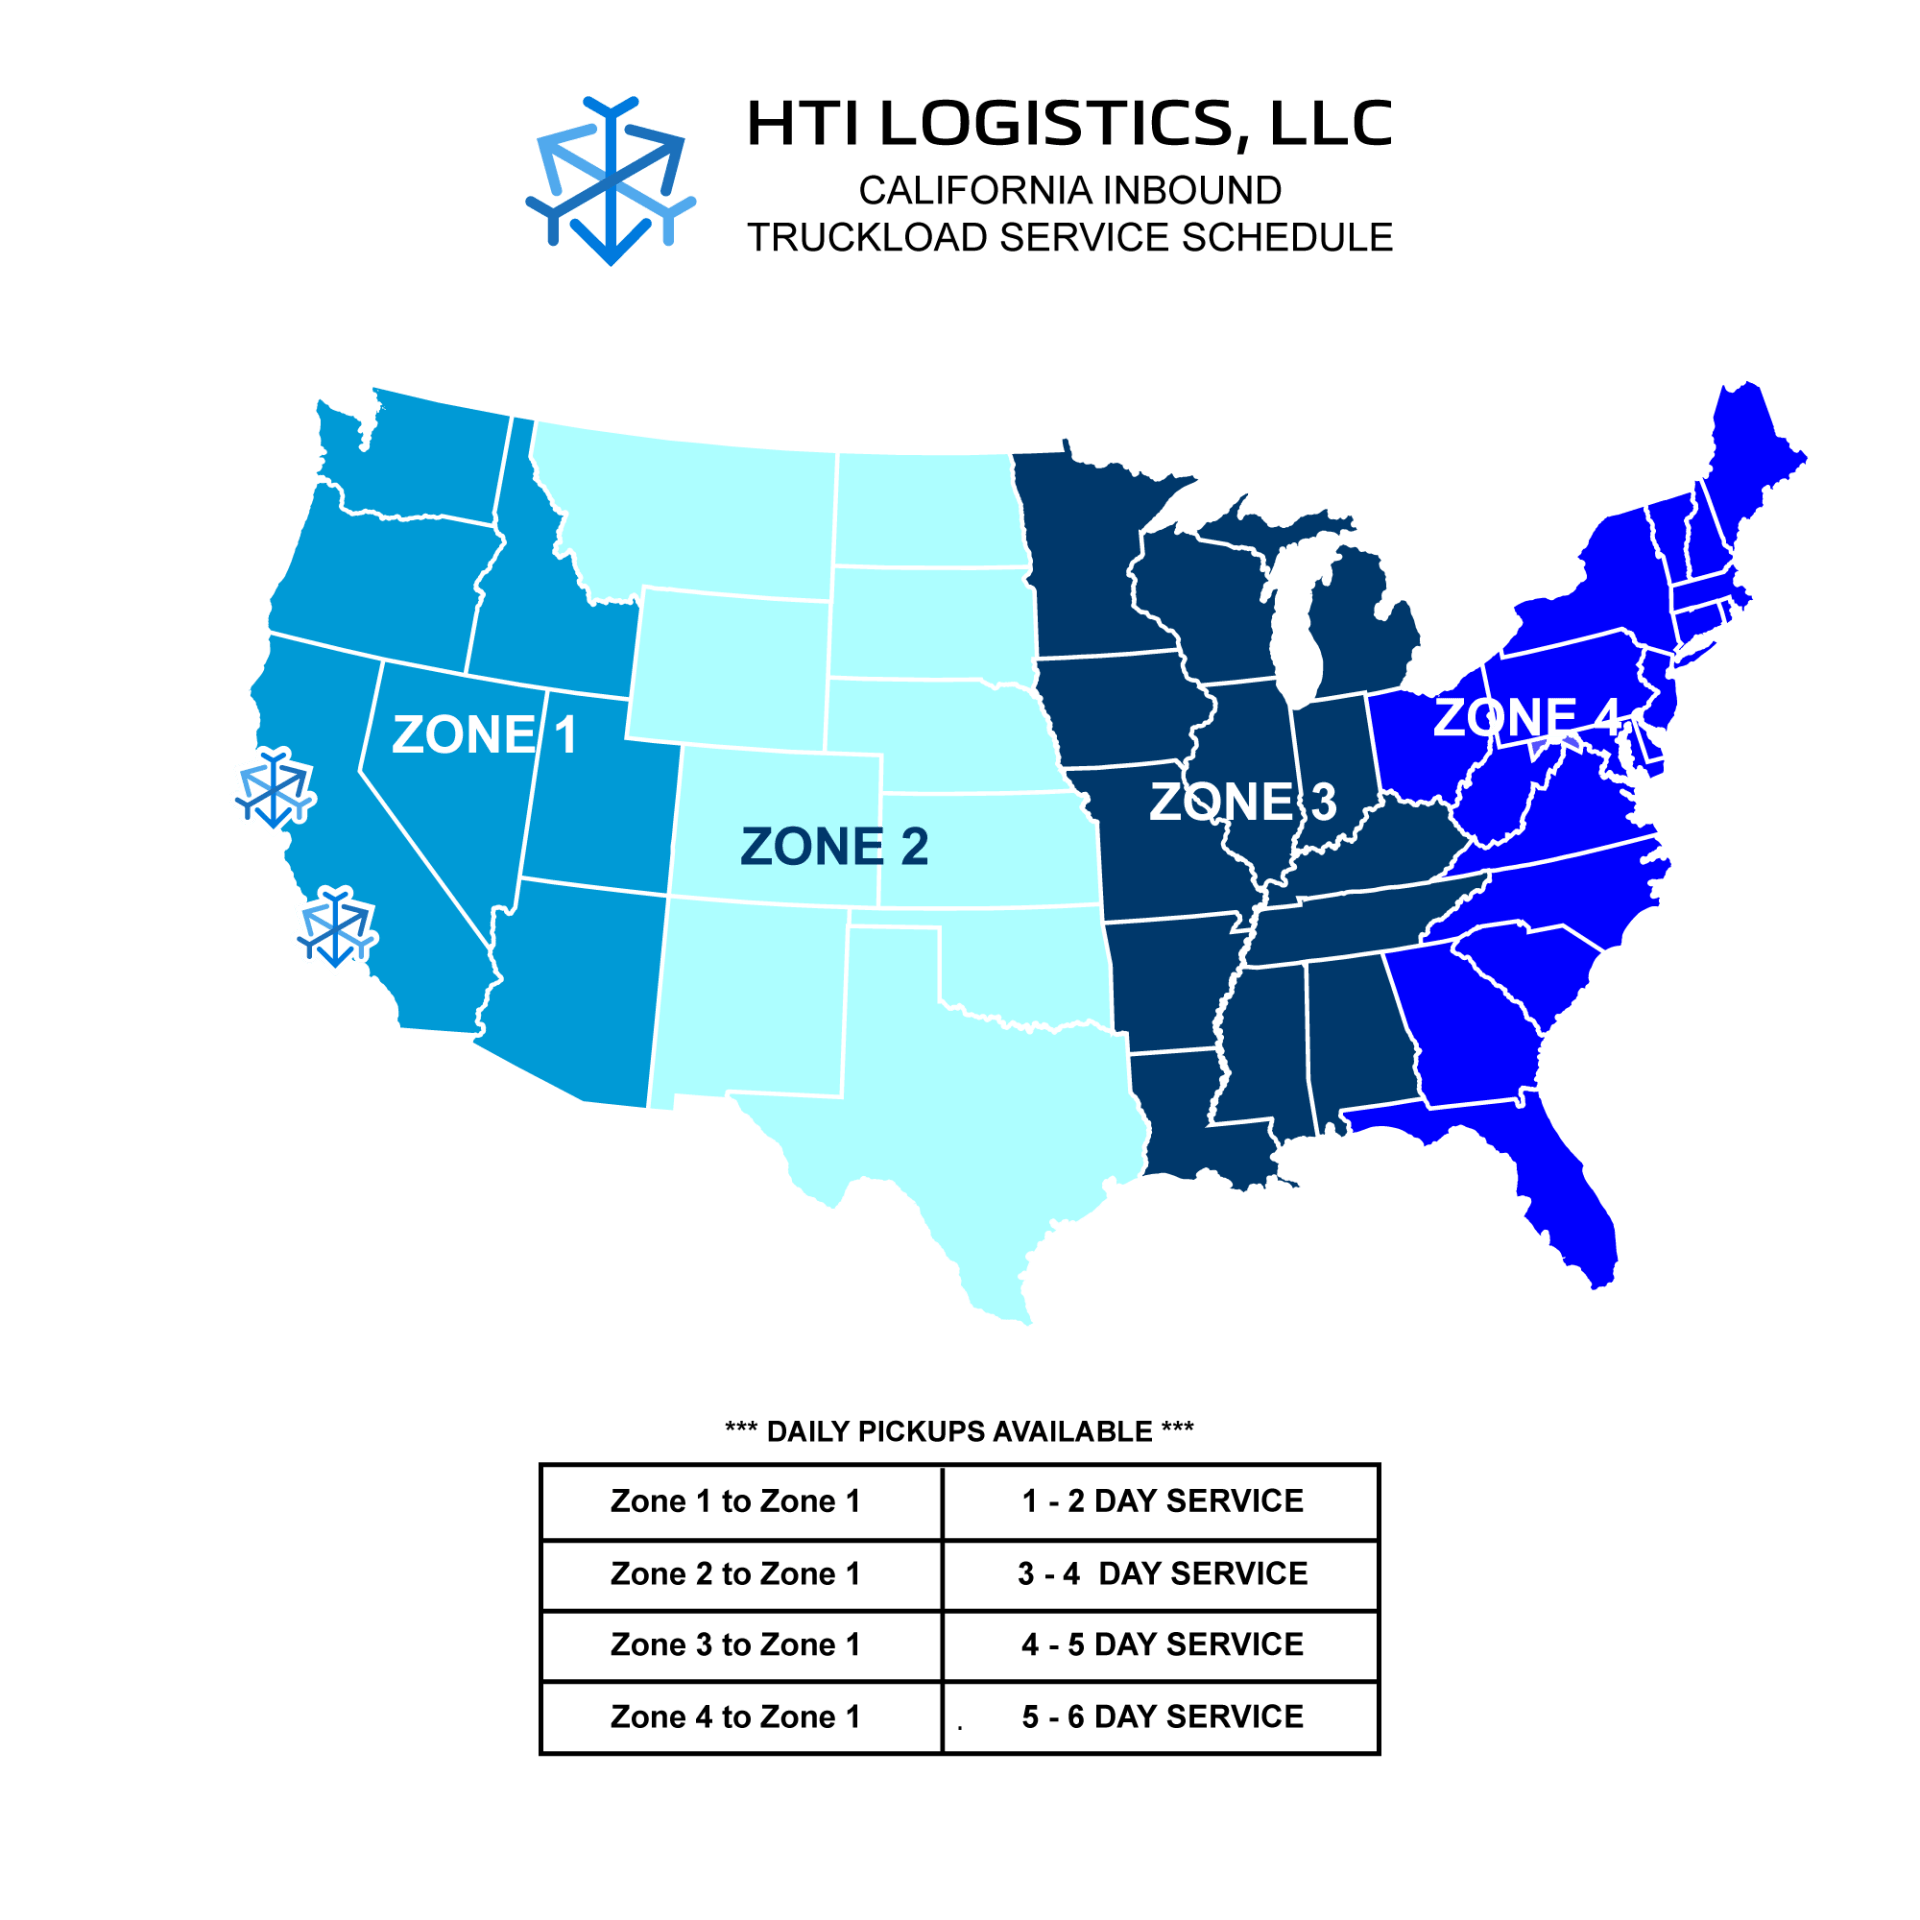 HTI LOGISTICS, LLC truckload service schedule